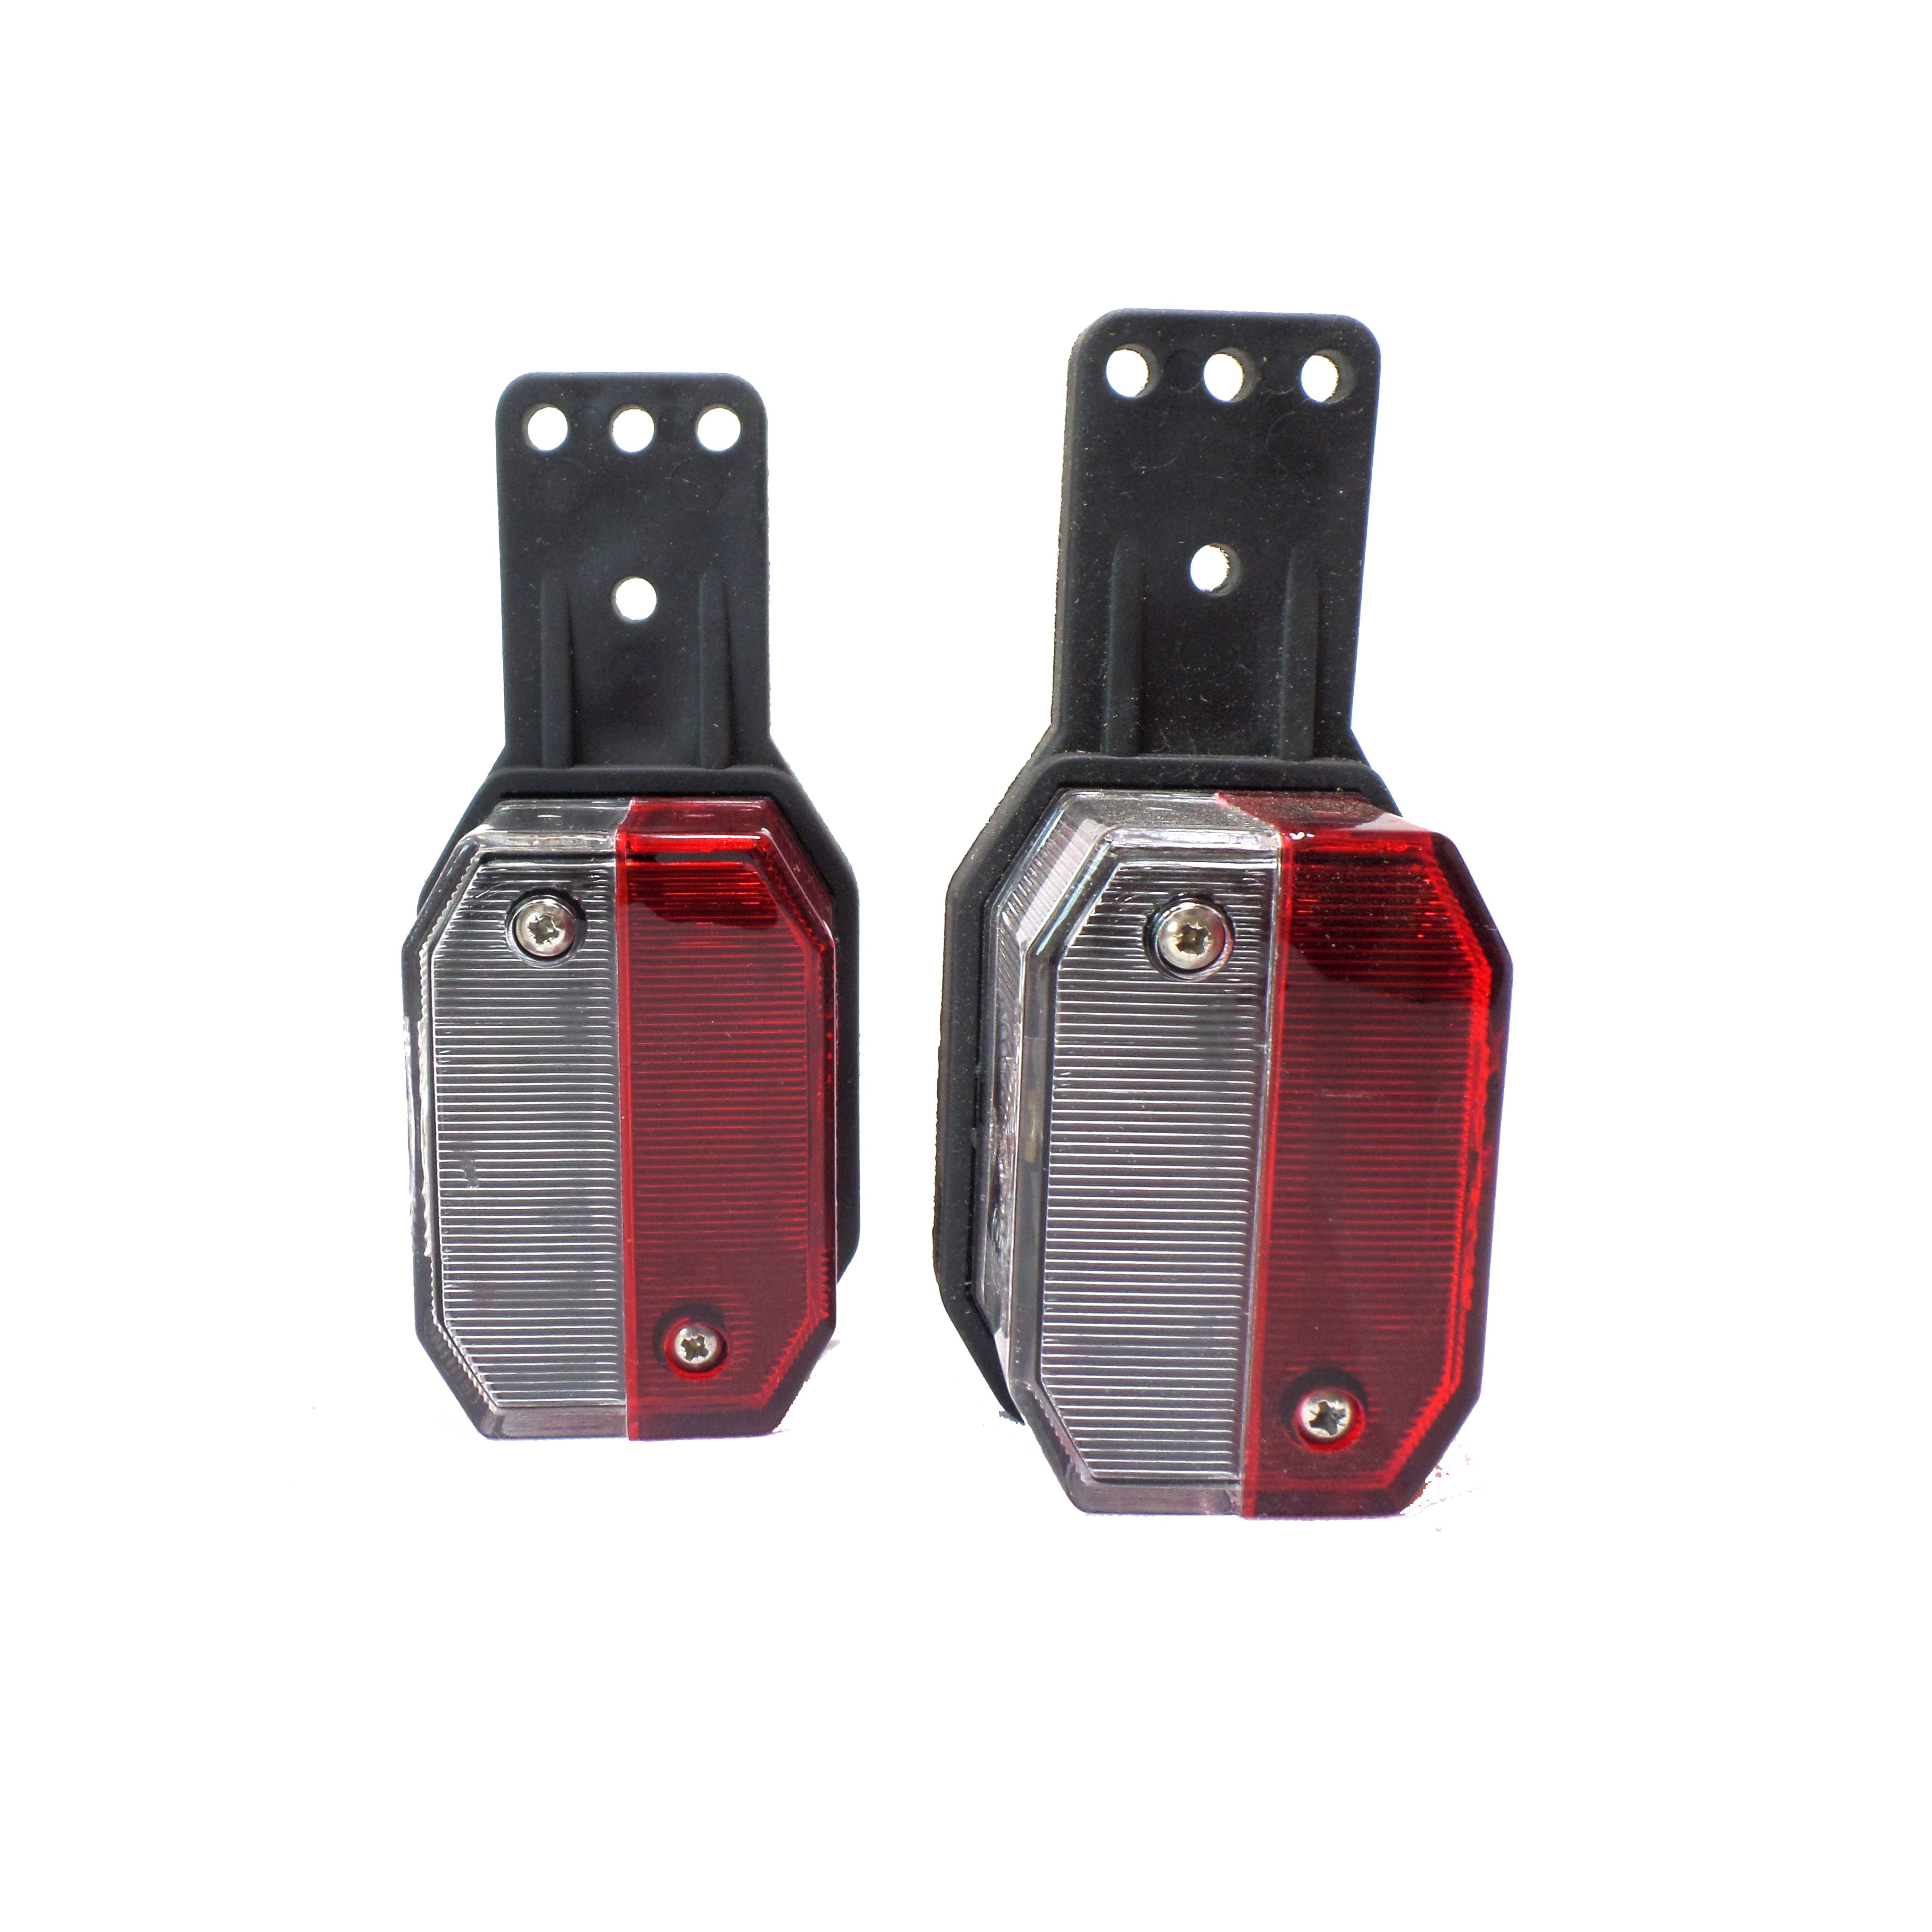 Aspöck Anhänger-Rückleuchte 2x Flexipoint Positionsleuchte - Umrissleuchte rot/weiß, ohne Leuchtmittel, rot / weiß